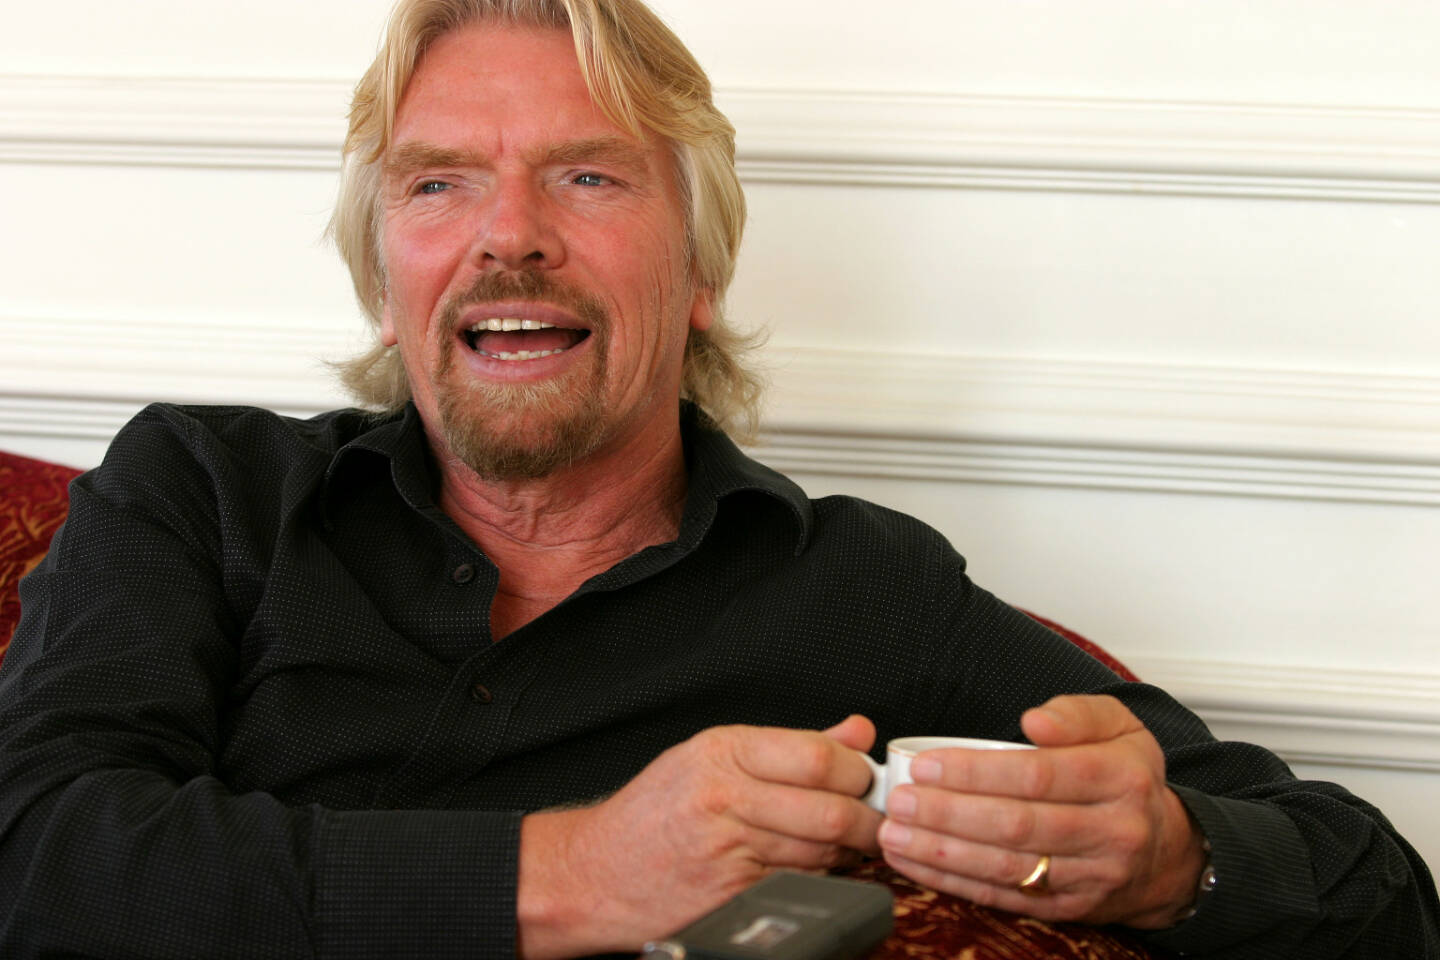 Sir Richard Branson, Virgin <a href=http://www.shutterstock.com/gallery-870892p1.html?cr=00&pl=edit-00>Prometheus72</a> / <a href=http://www.shutterstock.com/?cr=00&pl=edit-00>Shutterstock.com</a>